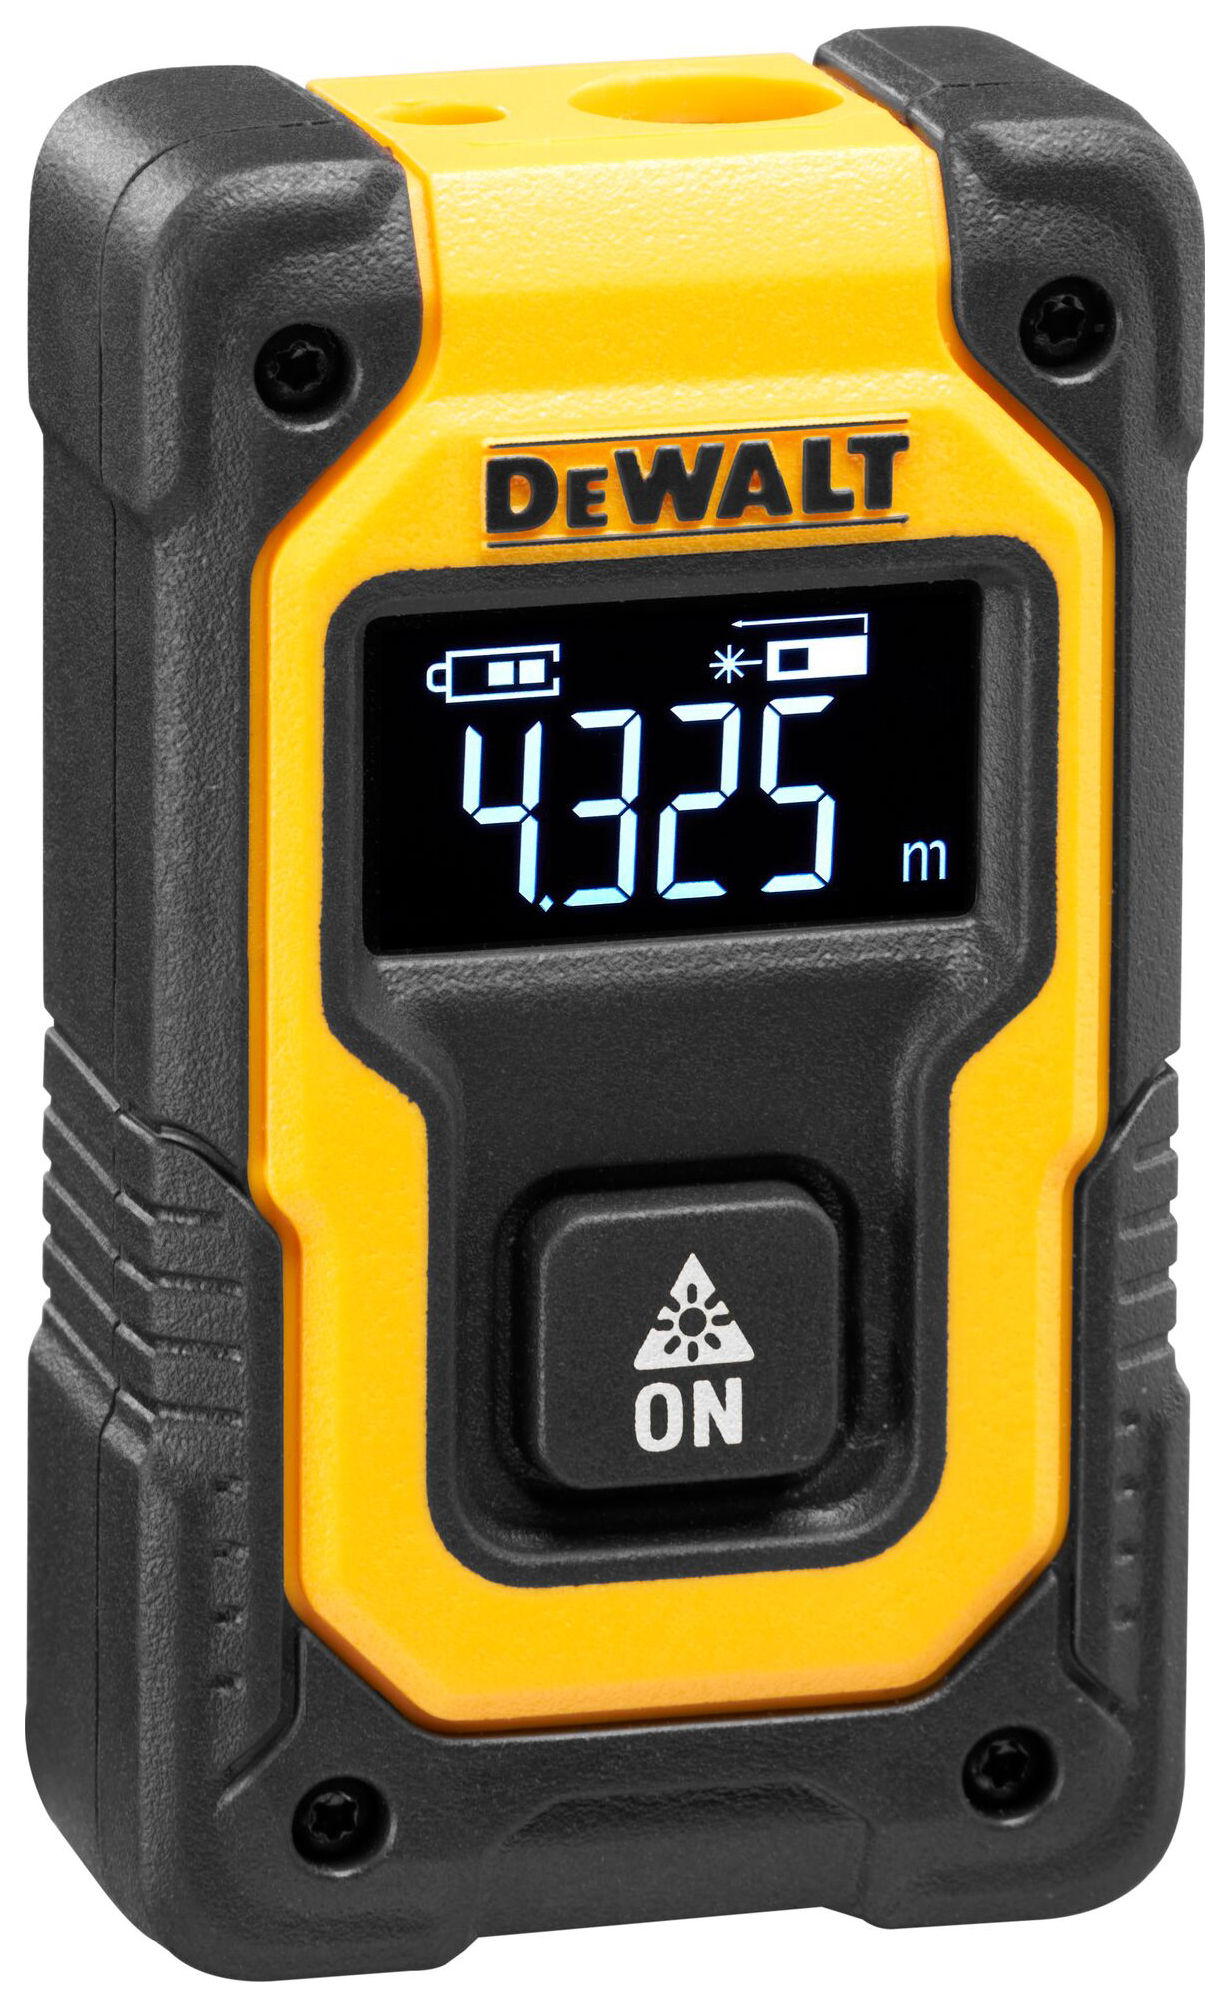 Image of DEWALT DW055PL-XJ 16m Pocket Laser Distance Measure